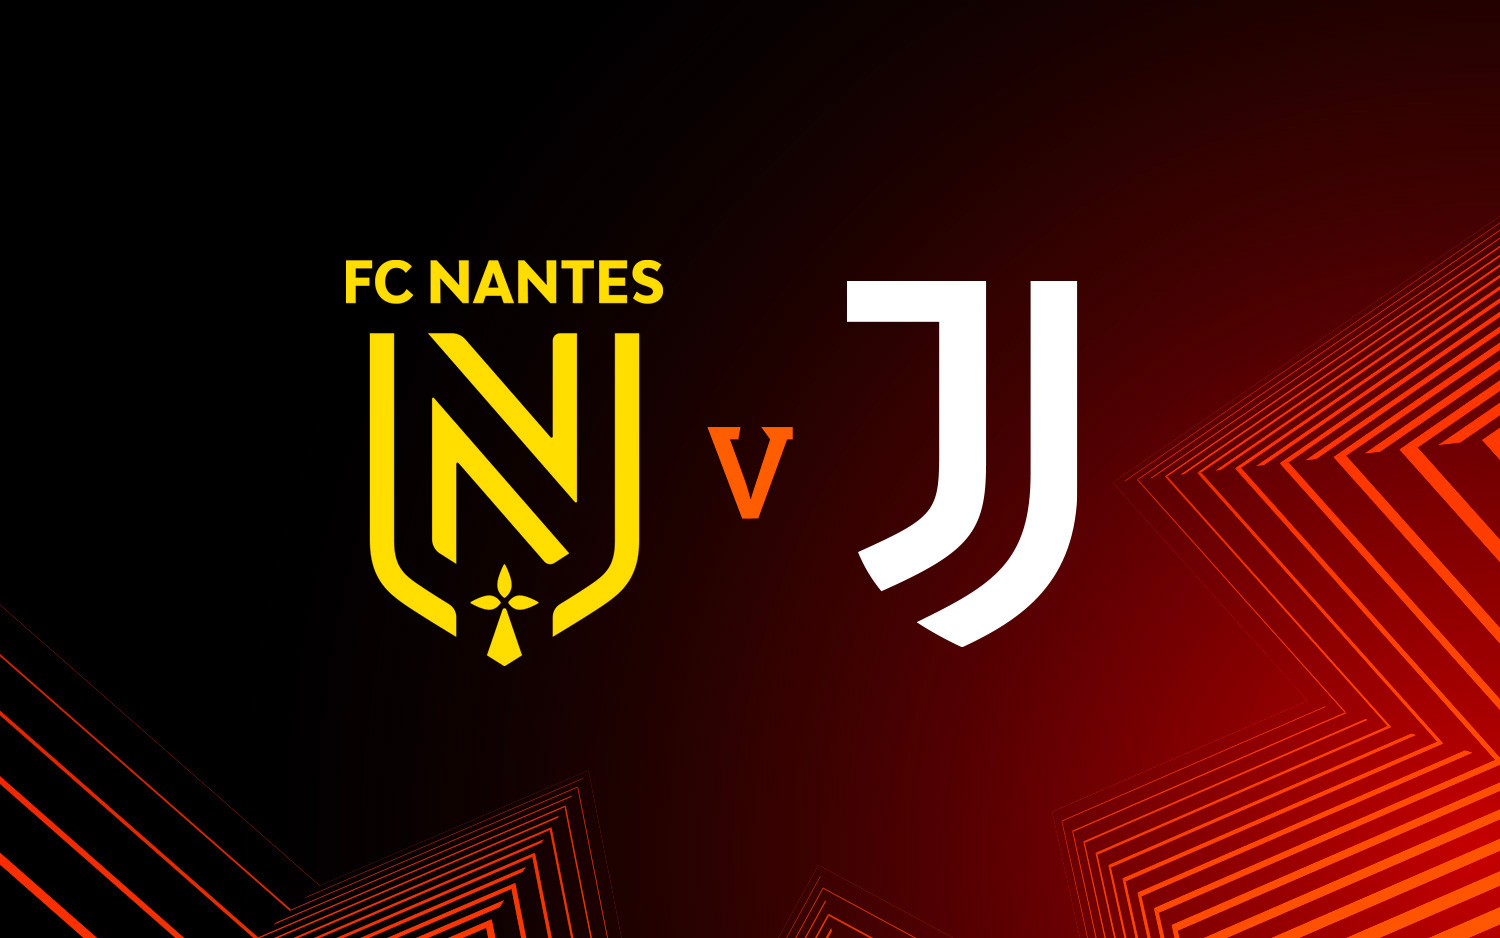 FC Nantes - Juventus : Di Maria, Lafont, décisions arbitrales, une rencontre qui a beaucoup fait parler 